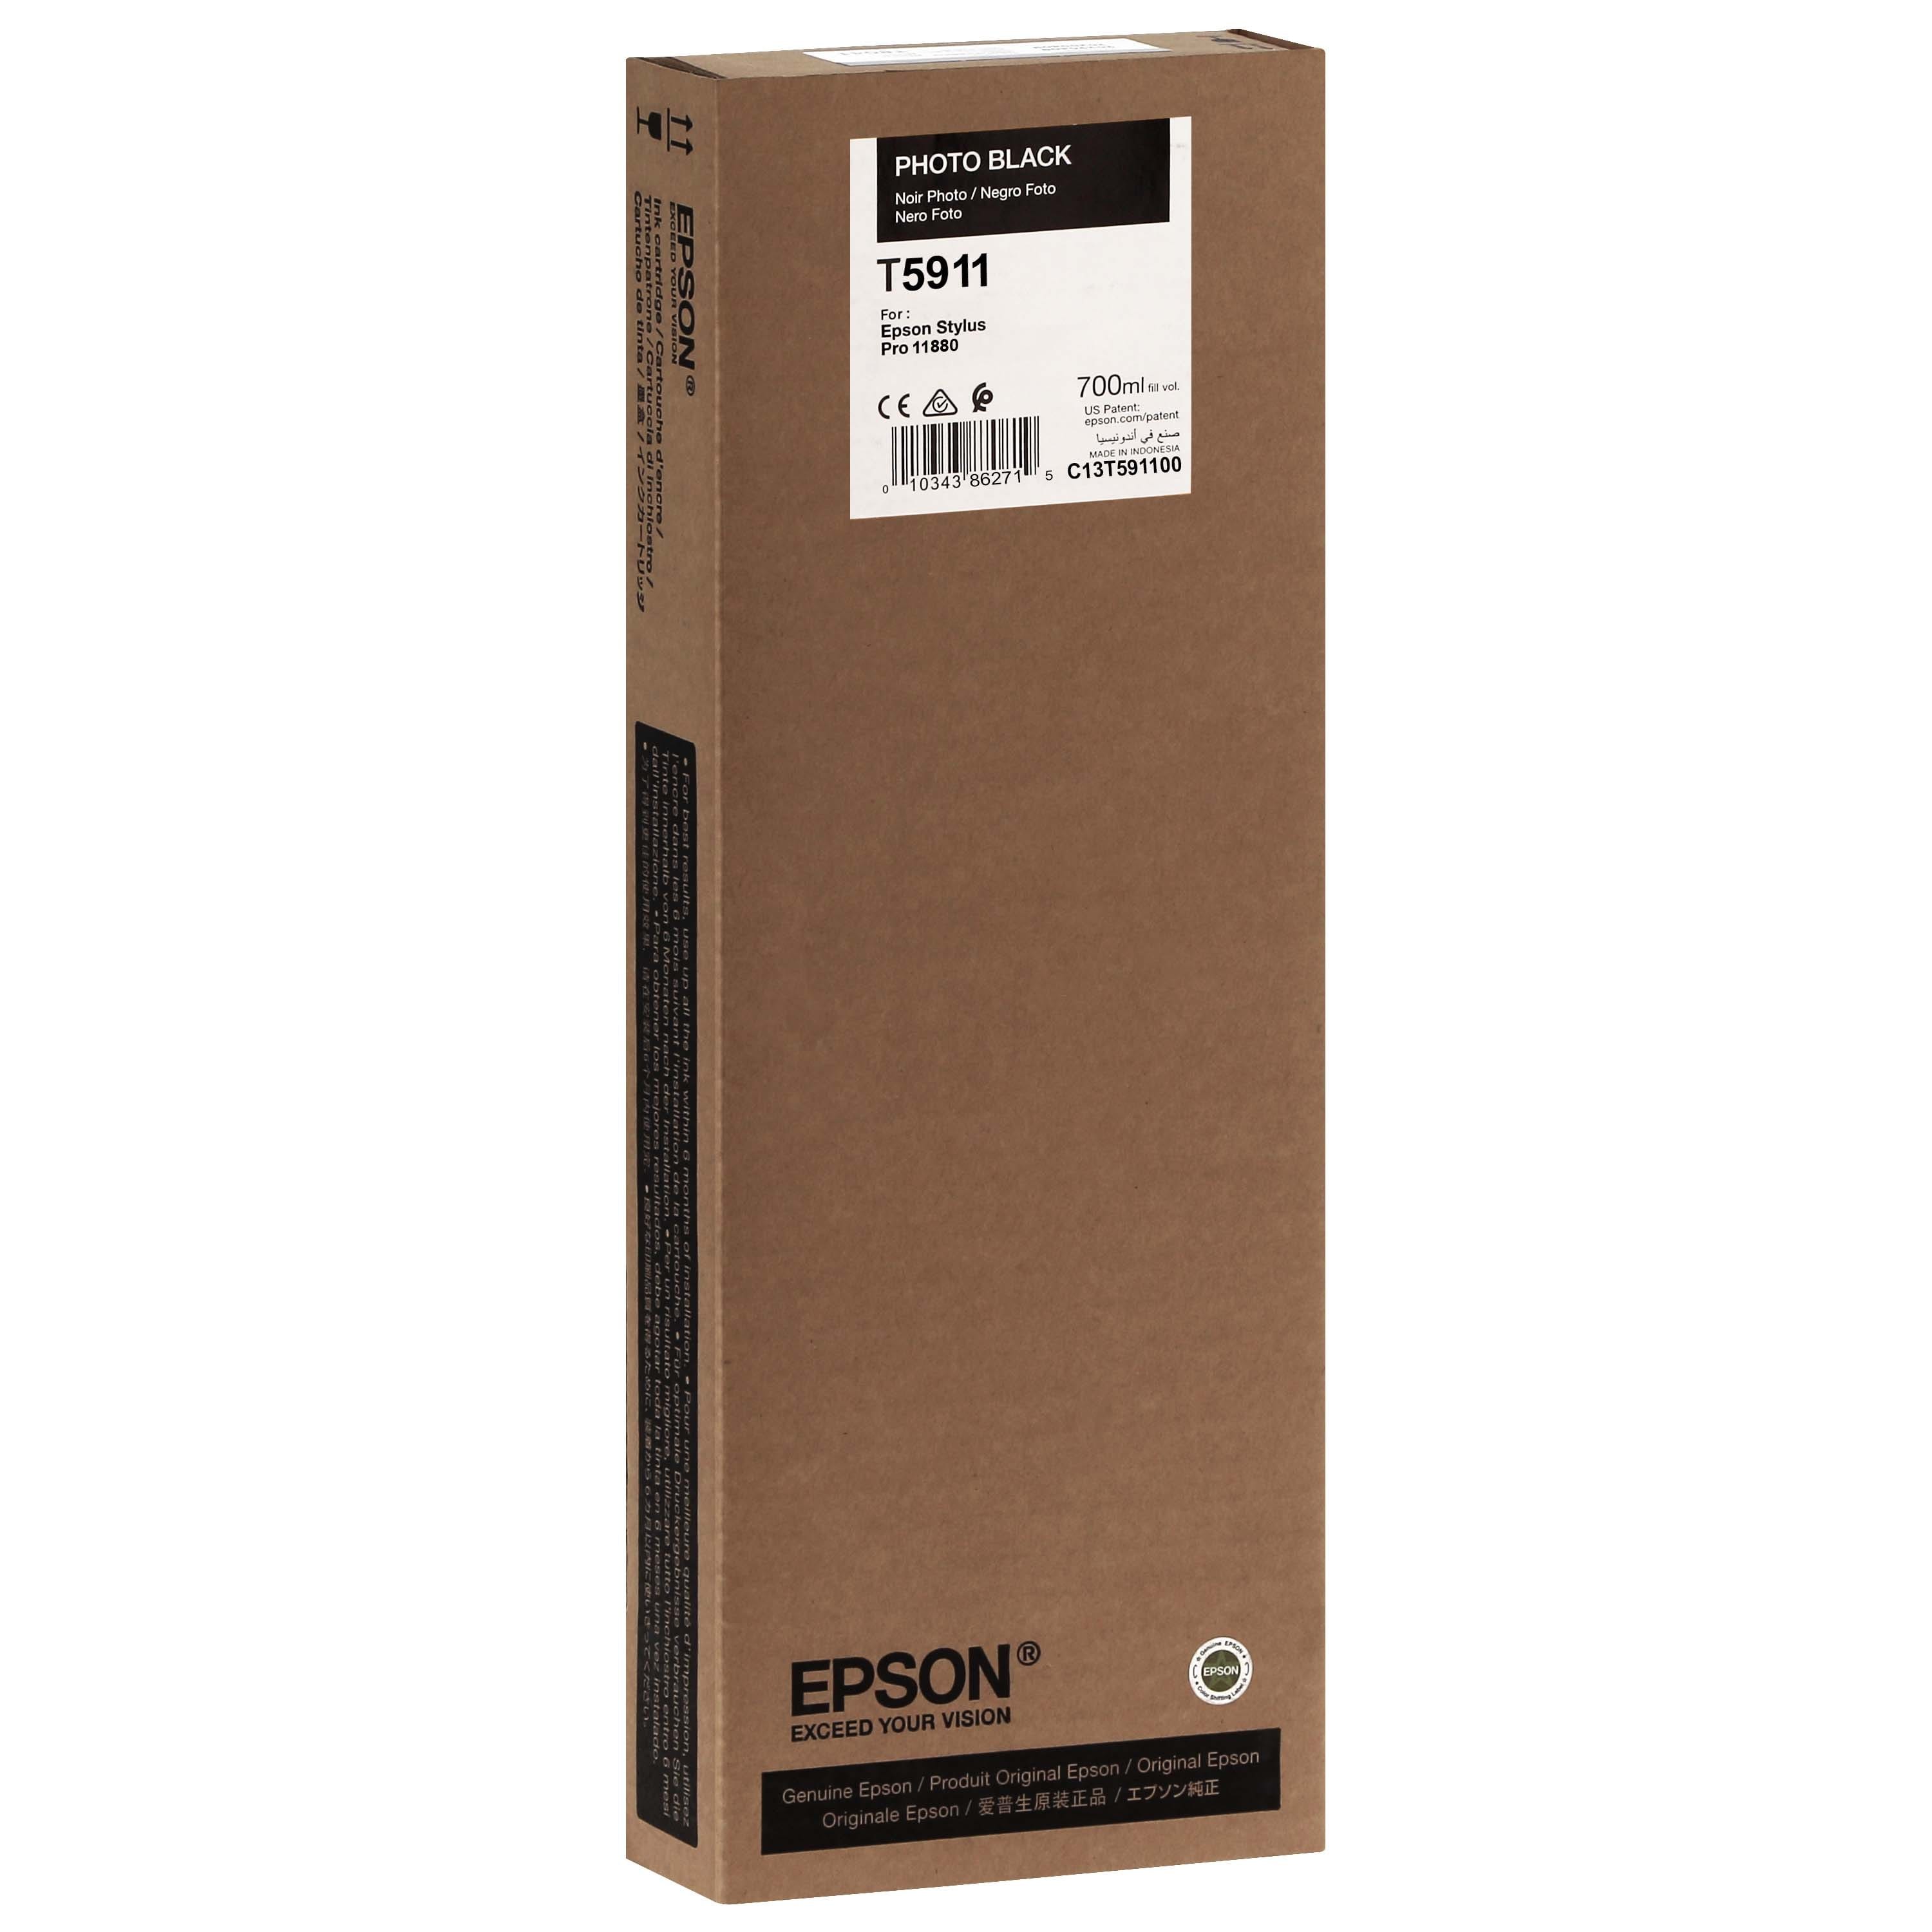 EPSON - Cartouche d'encre traceur T5911 Pour imprimante 11880 Noir Photo - 700ml